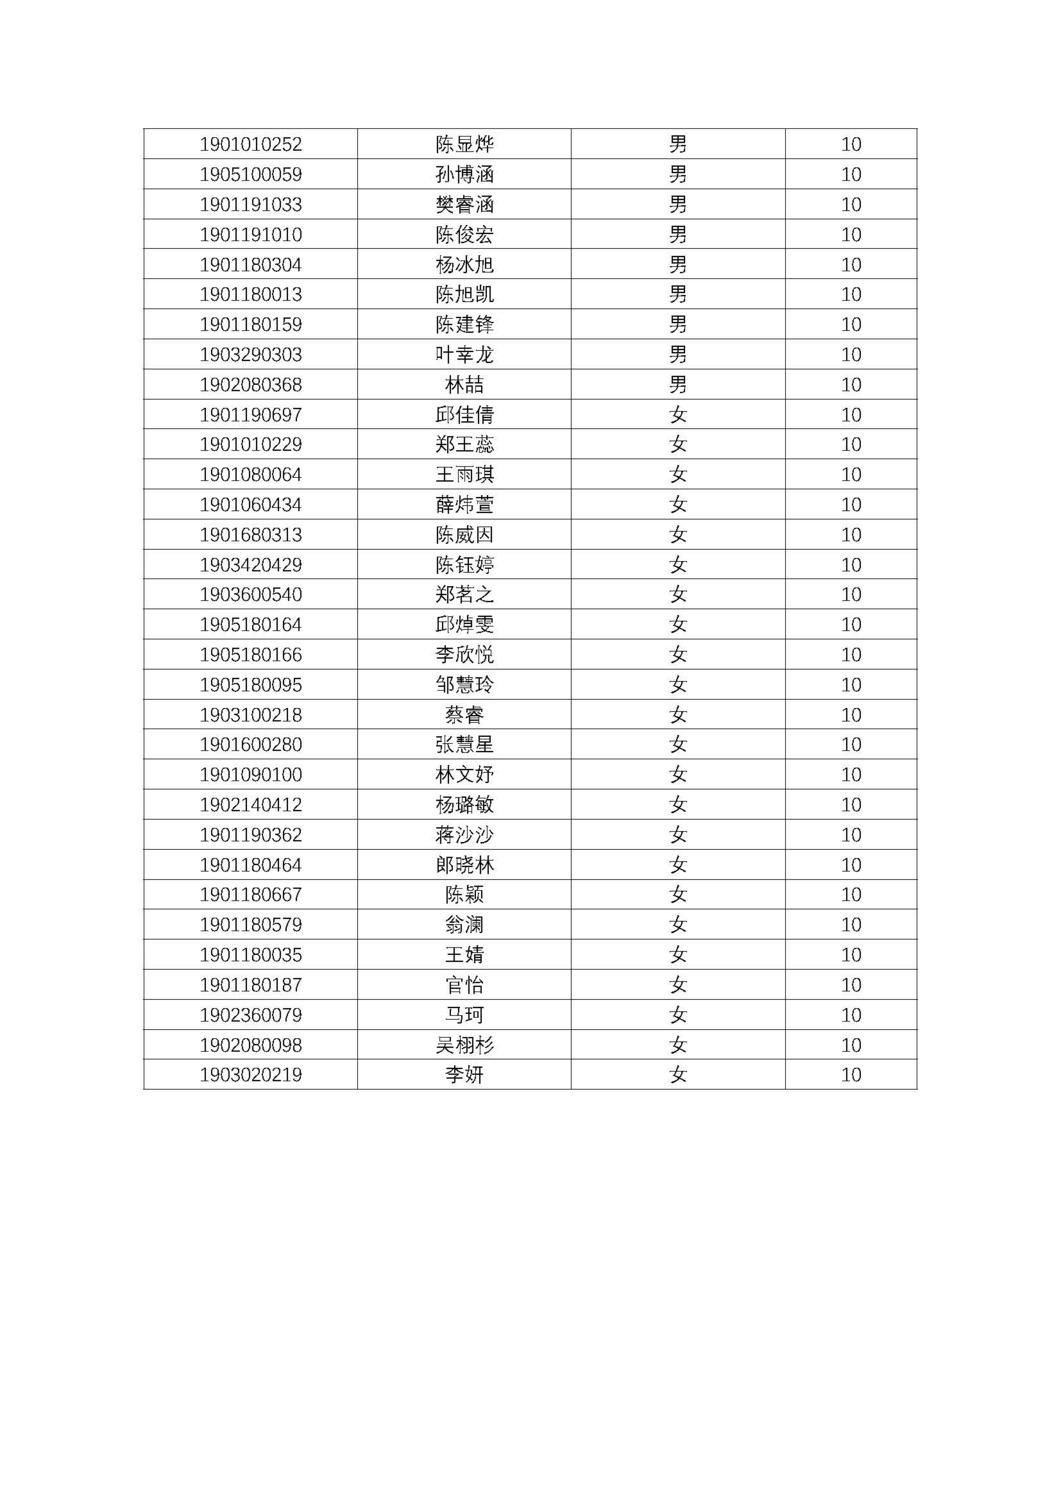 福州第十八中学2019级高一新生分班名单及报到须知_页面_13.jpg